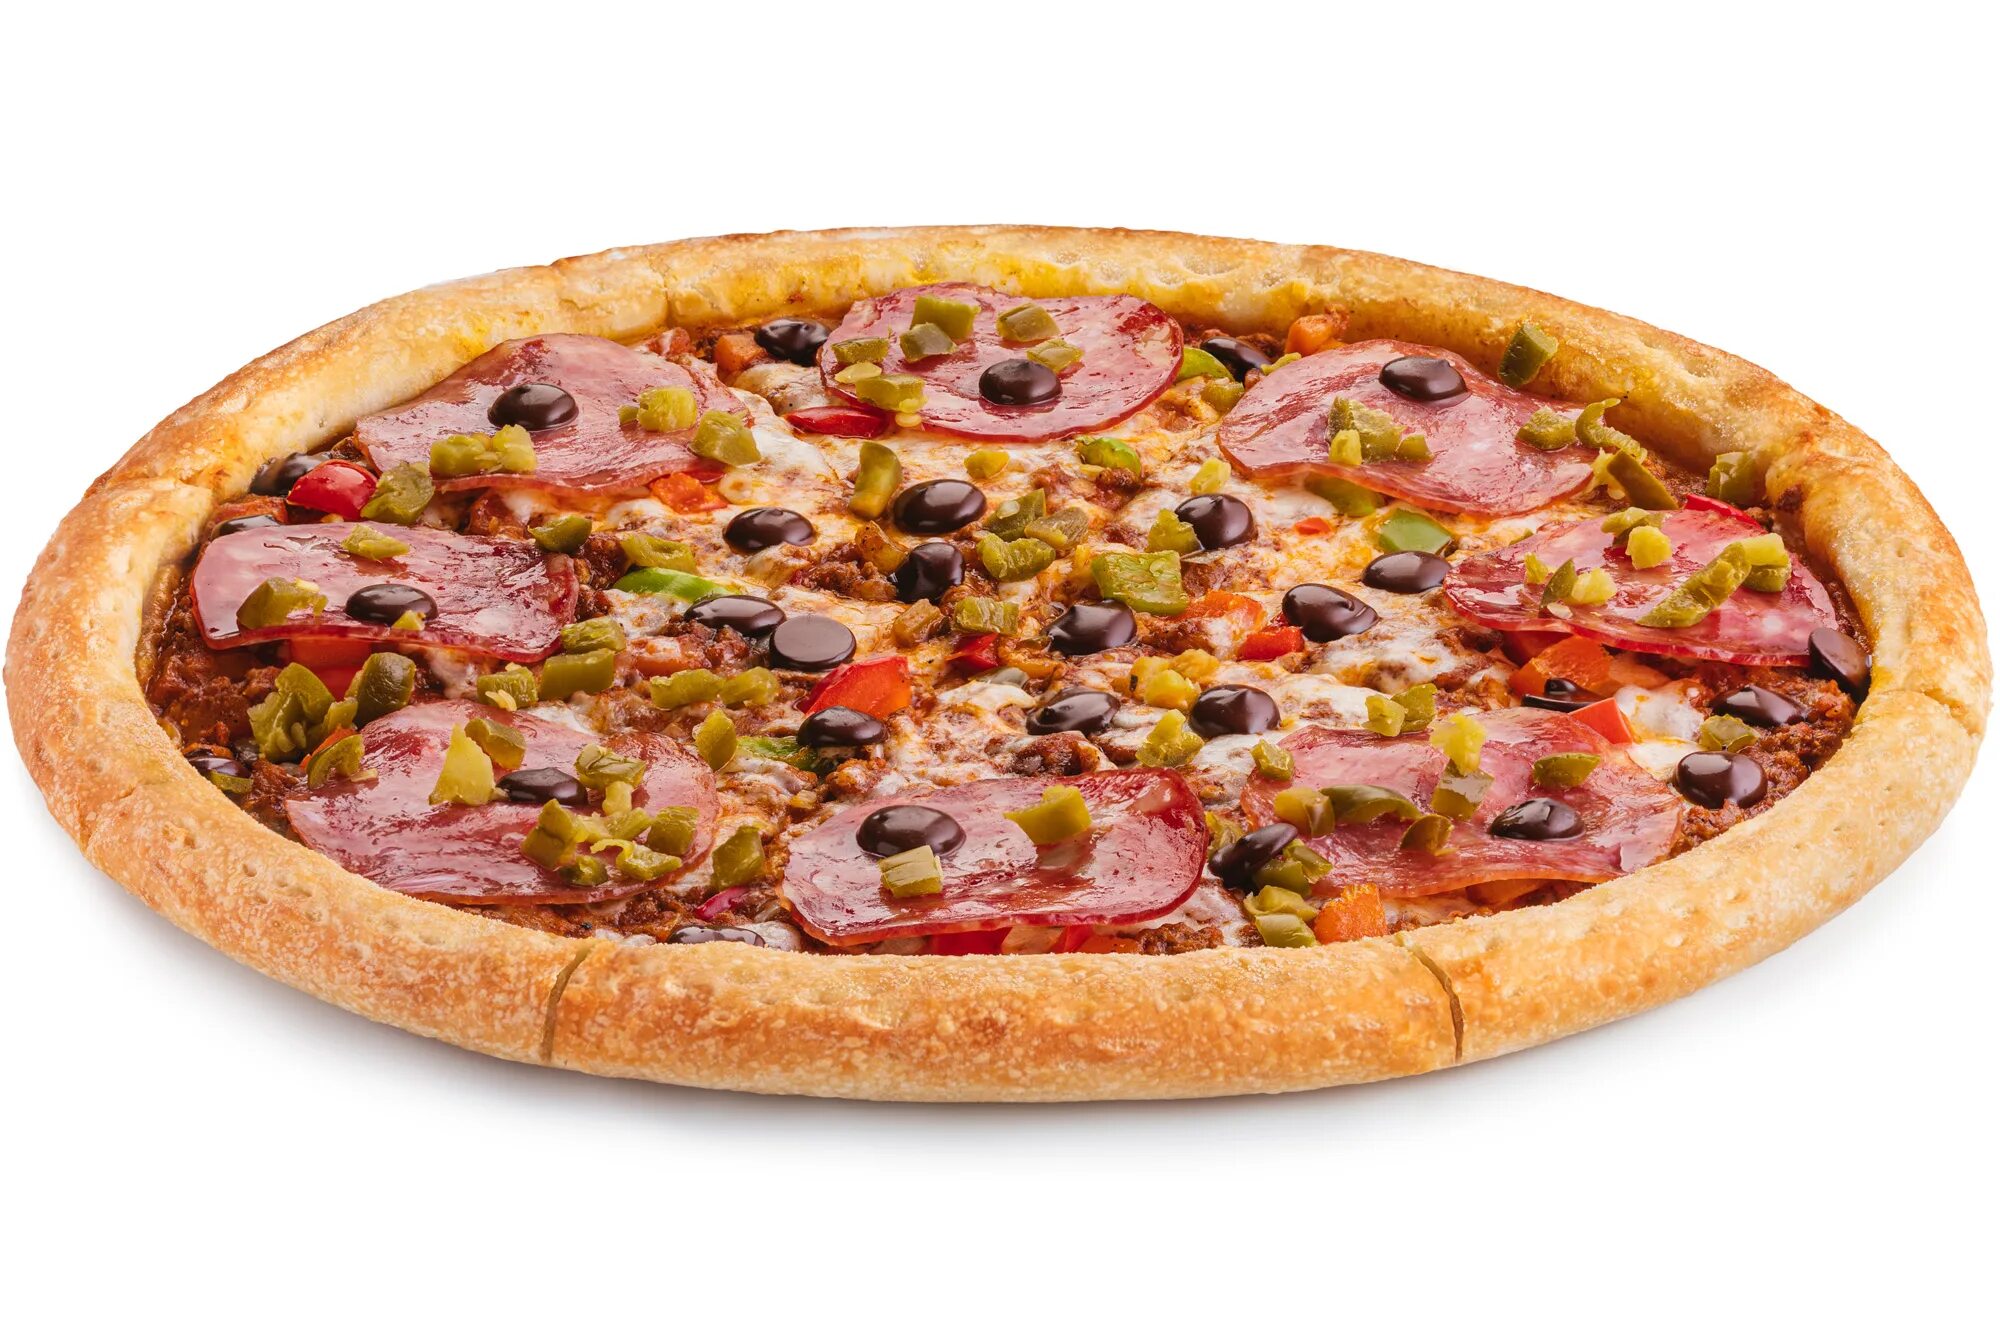 Окто пицца. FOODBAND пицца 40 см. Кон карне пицца. Чили пицца. Мясной хит пицца.